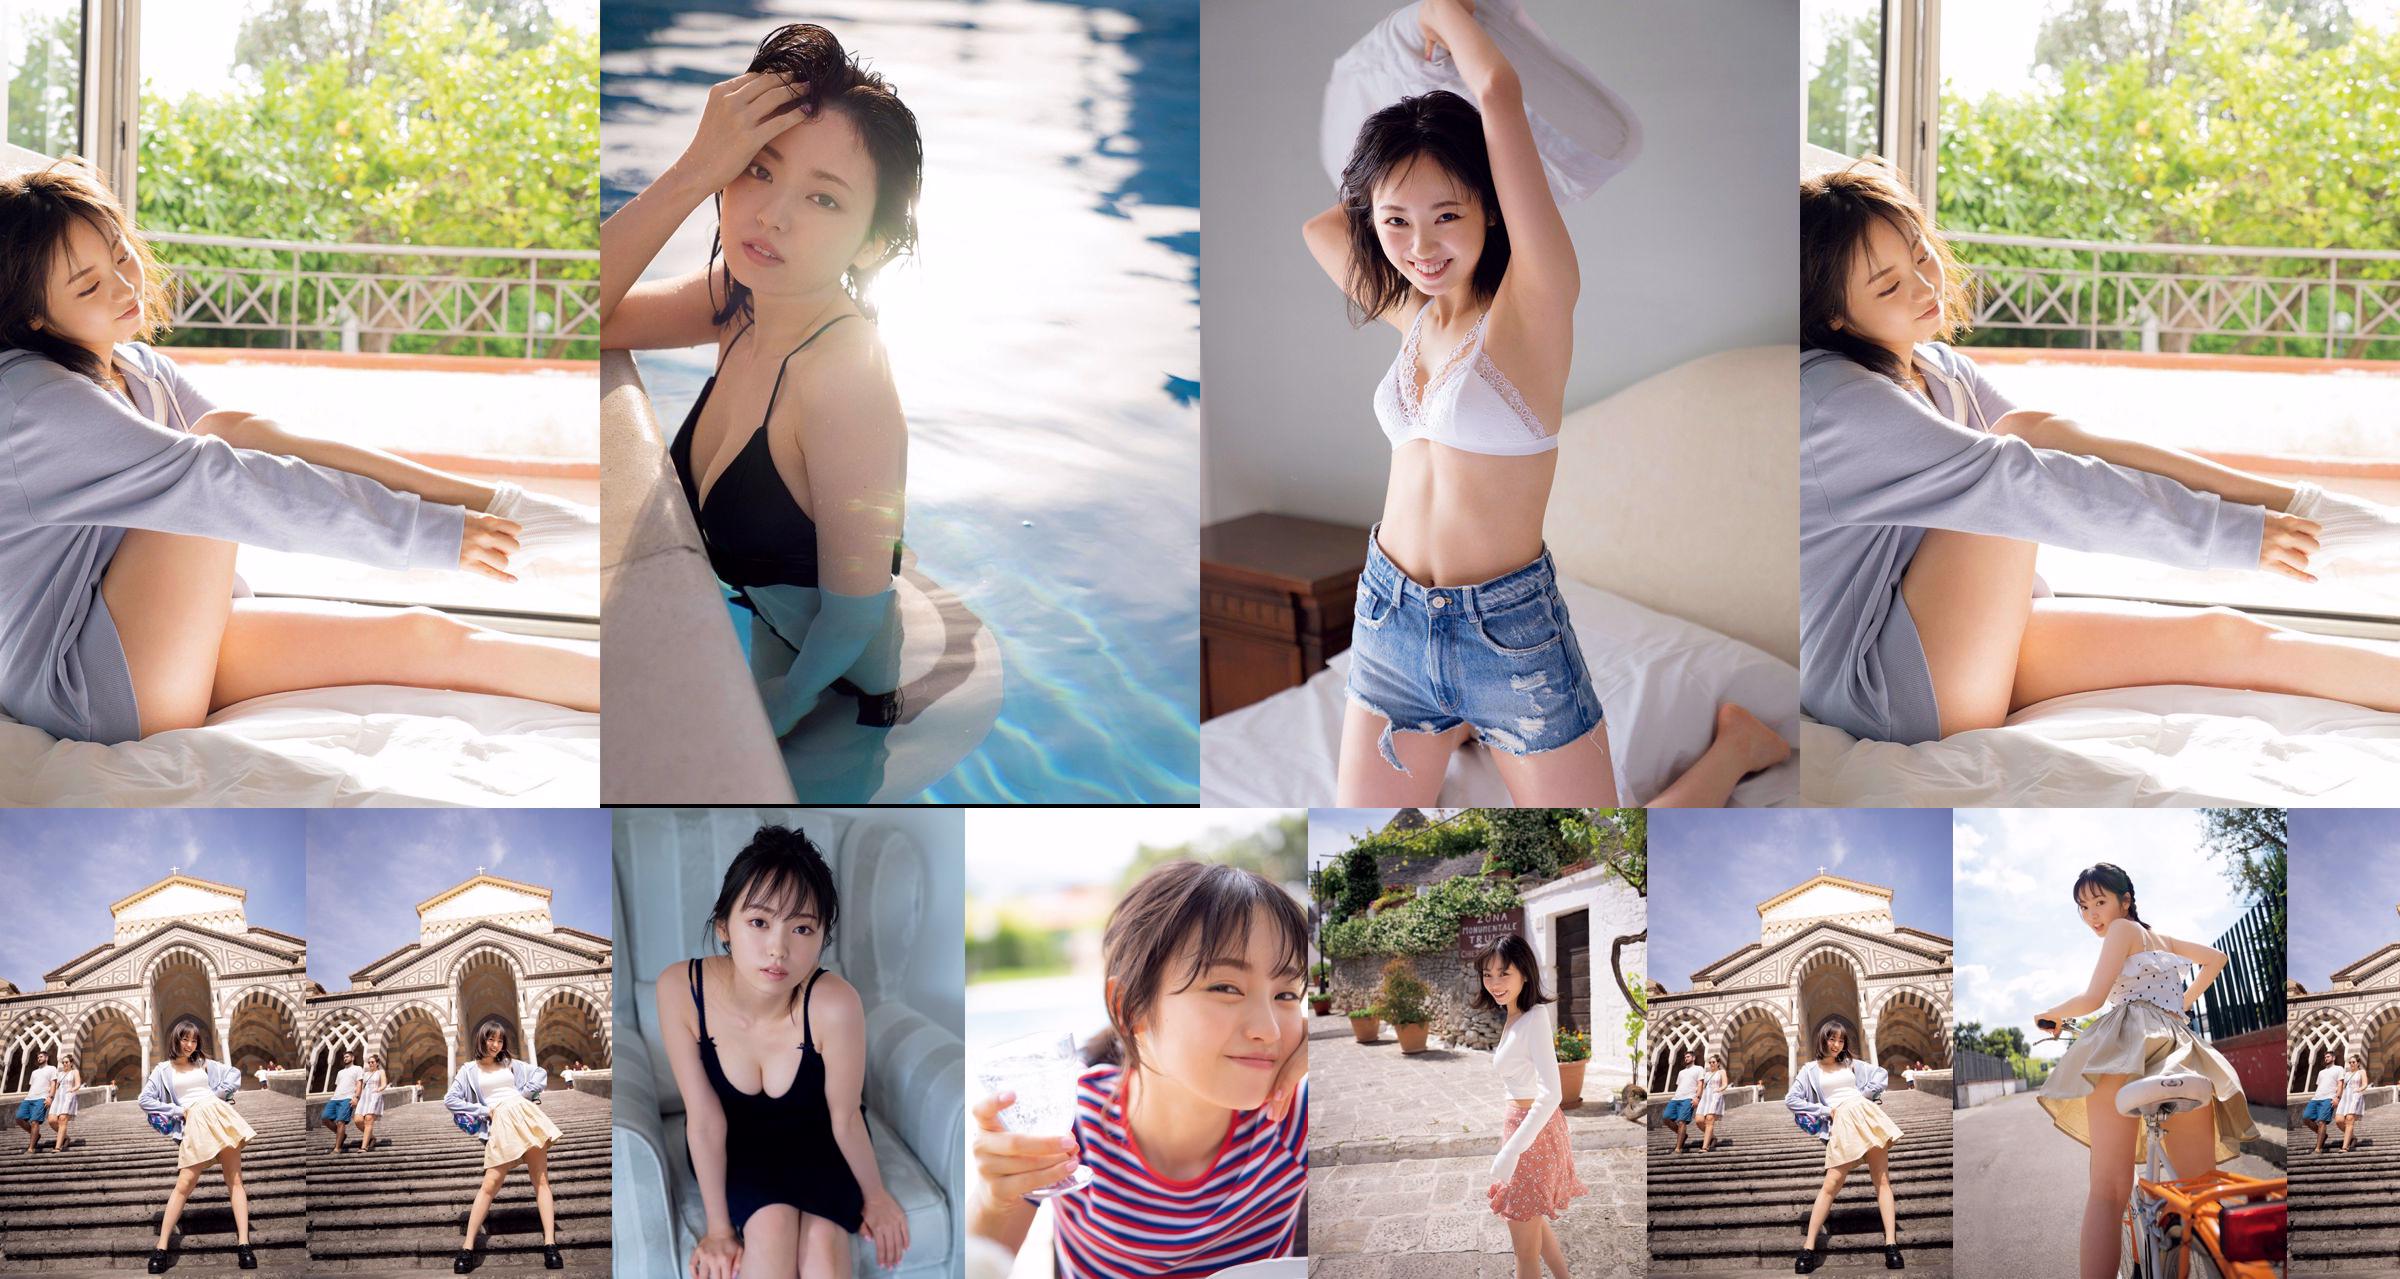 [วันศุกร์] Keyakizaka46, Yui Imaizumi "Swimsuit & Lingerie of" First and Last! "" รูปภาพ No.d86441 หน้า 4